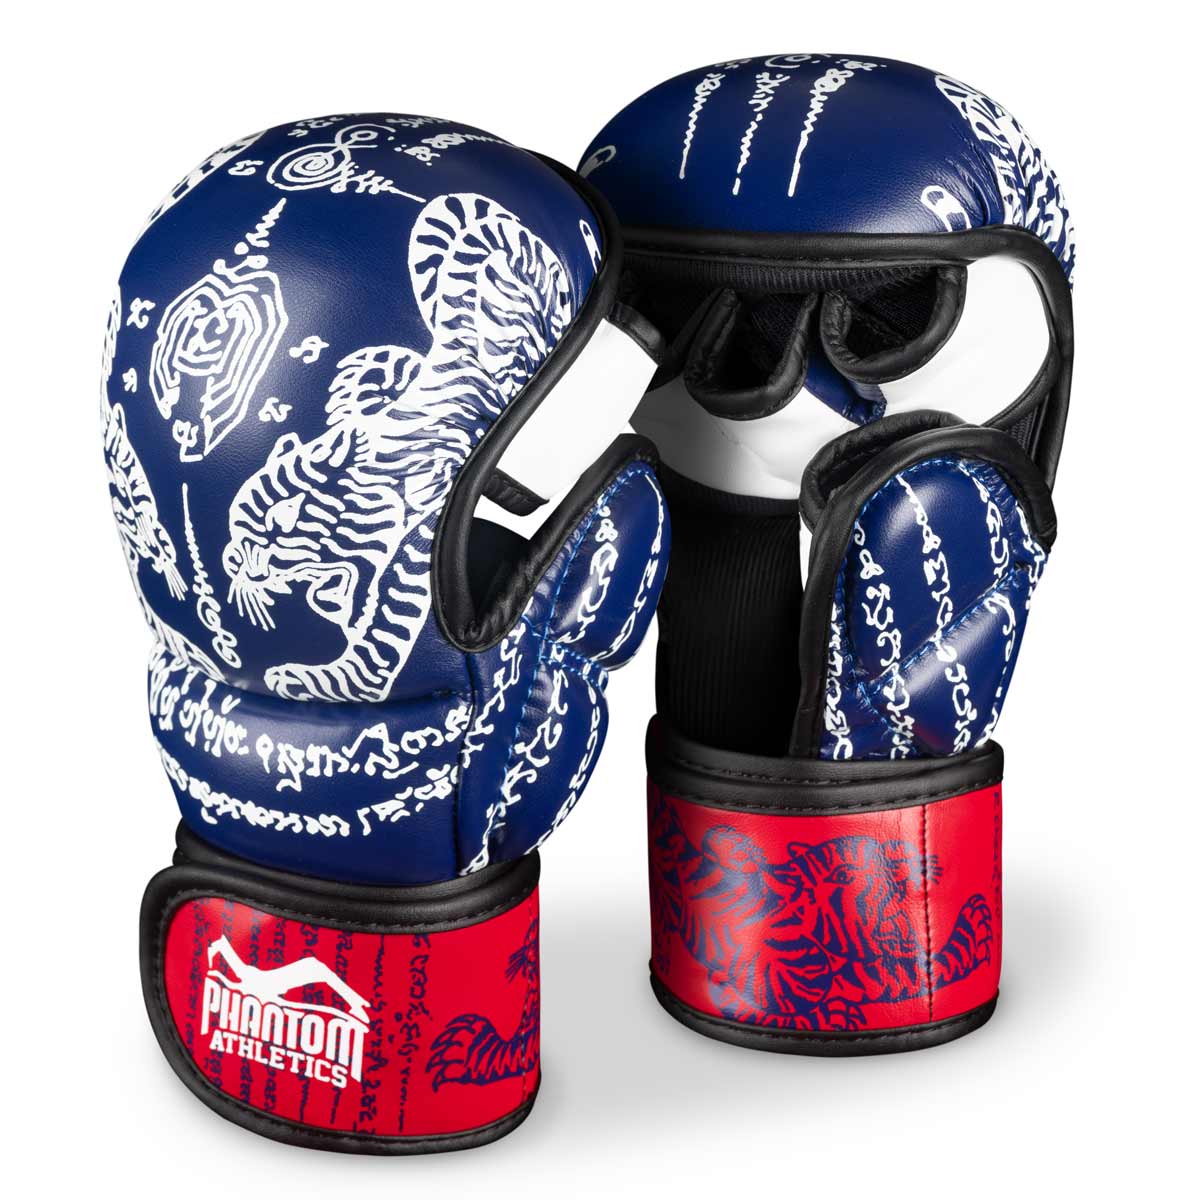 Gants Phantom Muay Thai pour la boxe thaïlandaise et le sparring MMA, la compétition et l'entraînement. Dans le design traditionnel Sak Yant et la couleur bleu/rouge.